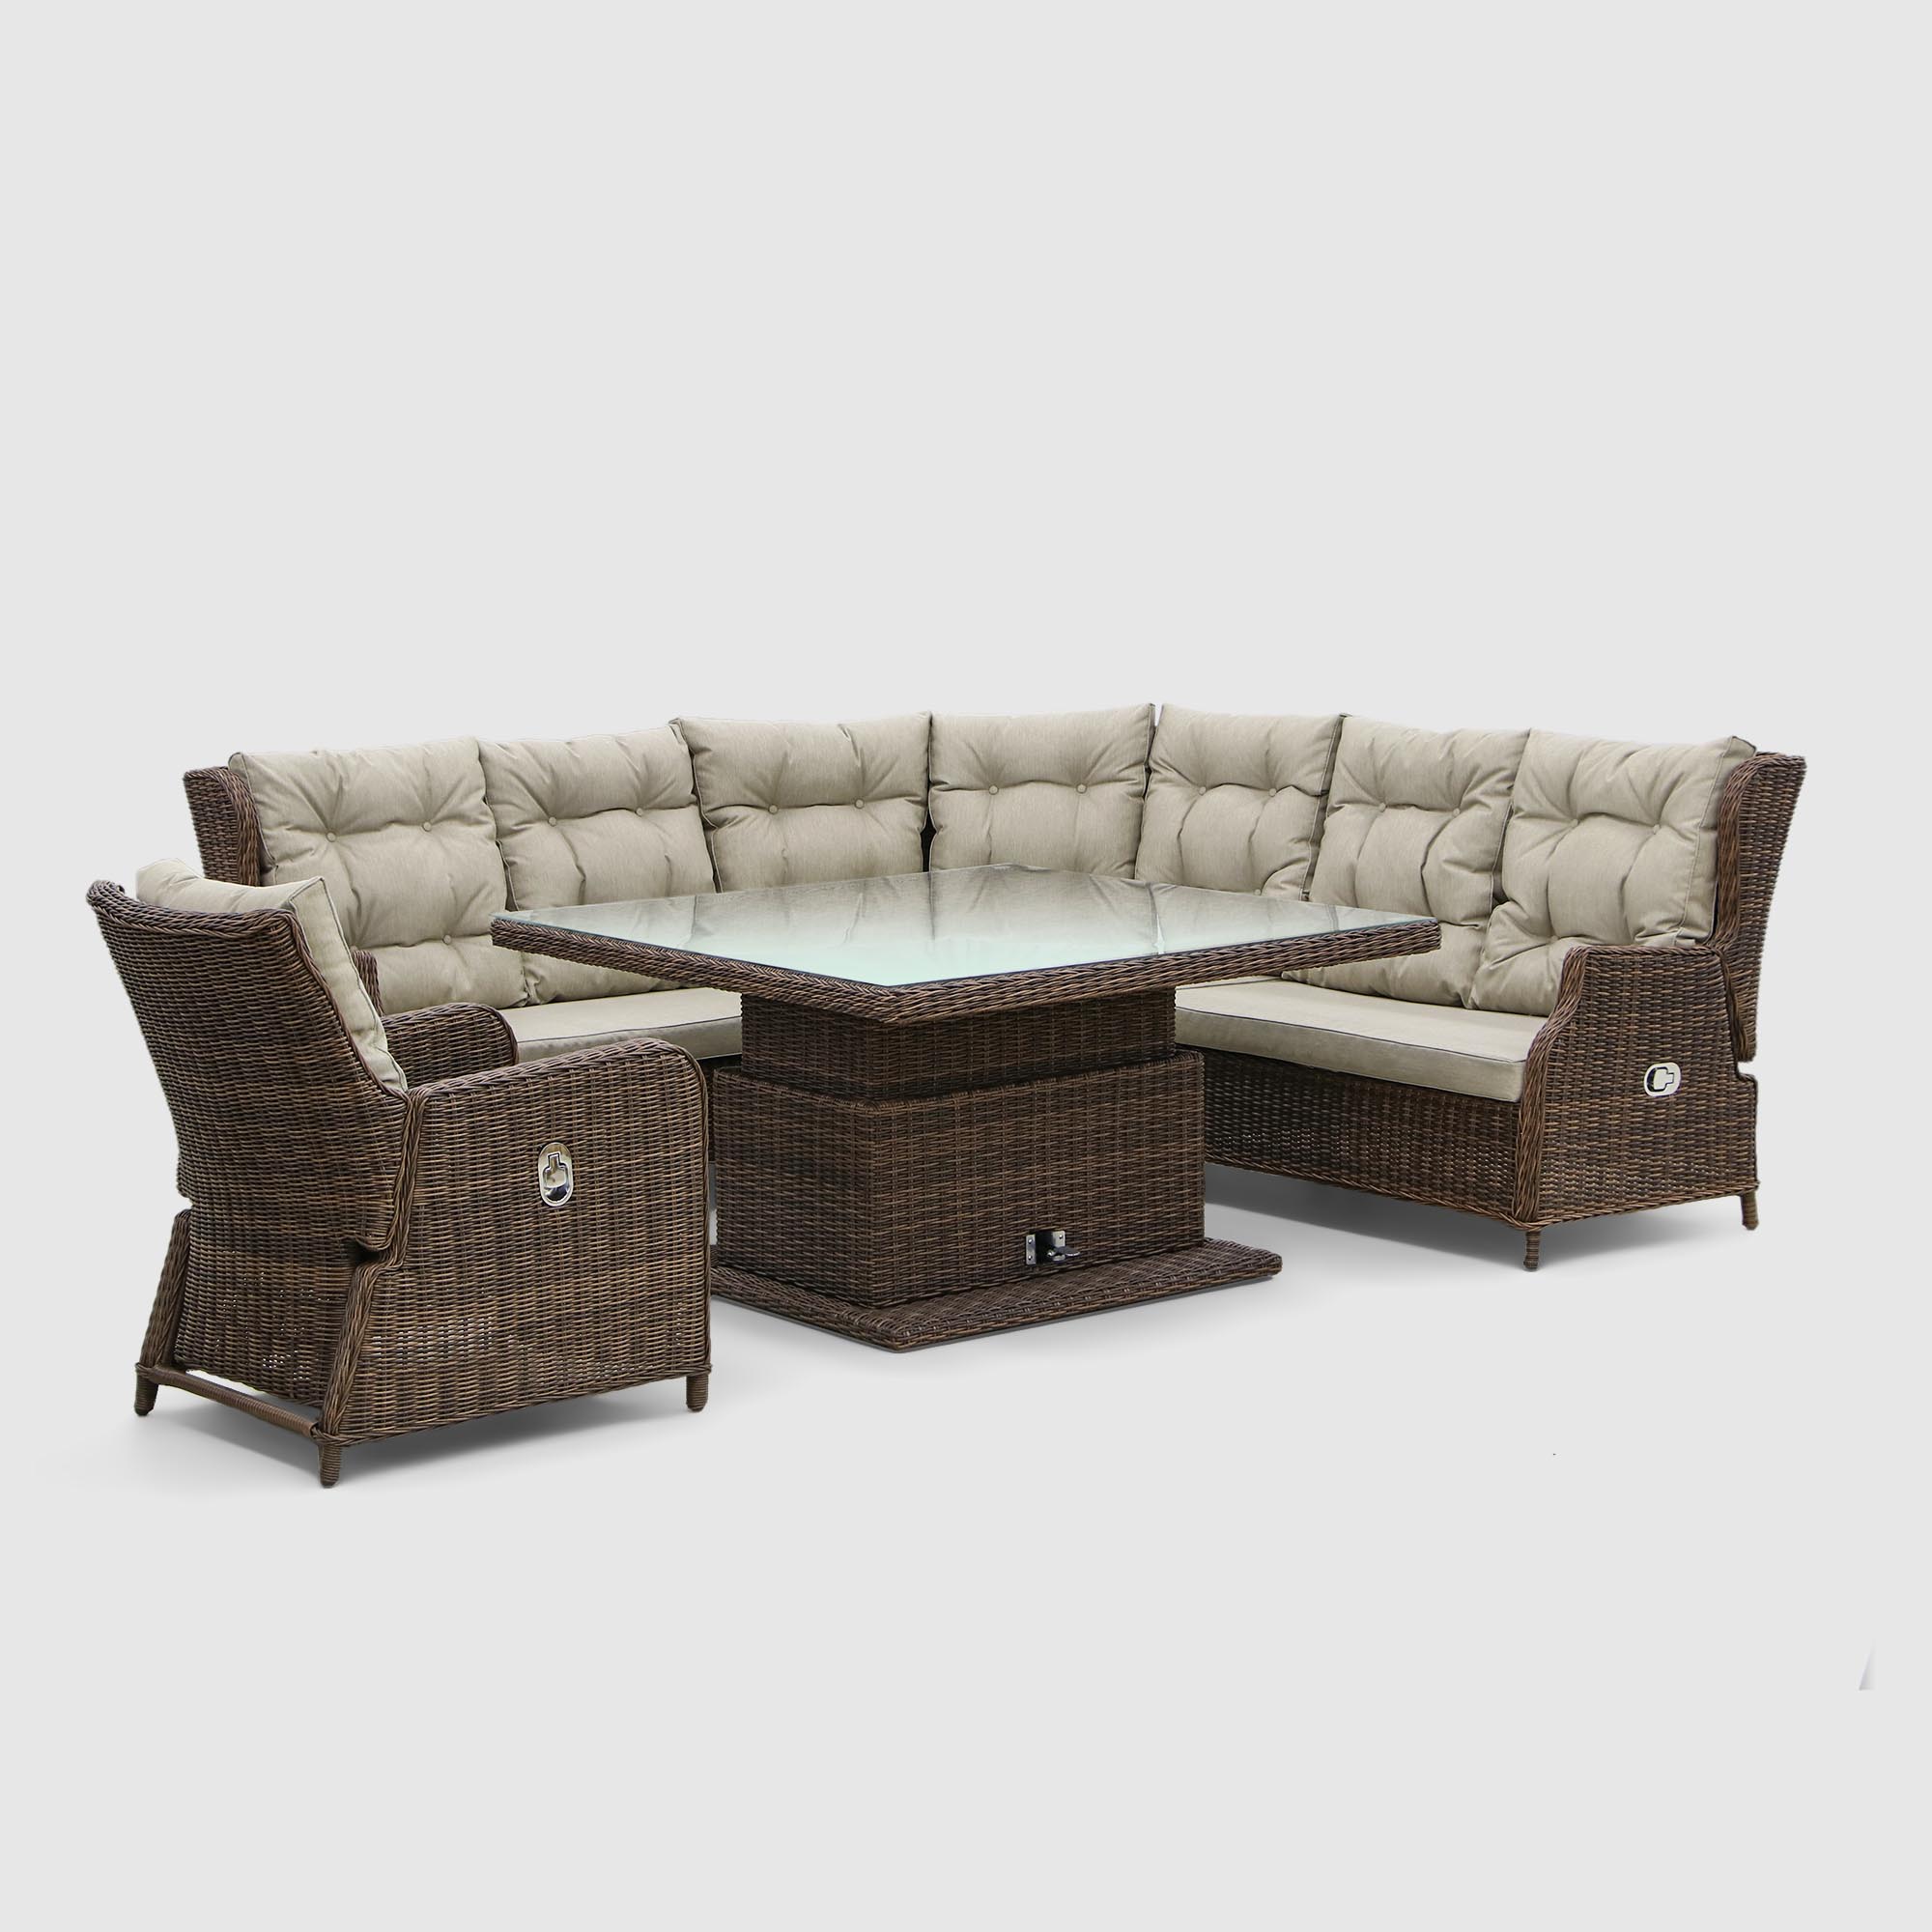 Комплект мебели Yuhang угловой модульный 5 предметов, цвет коричневый, размер 215х215х98